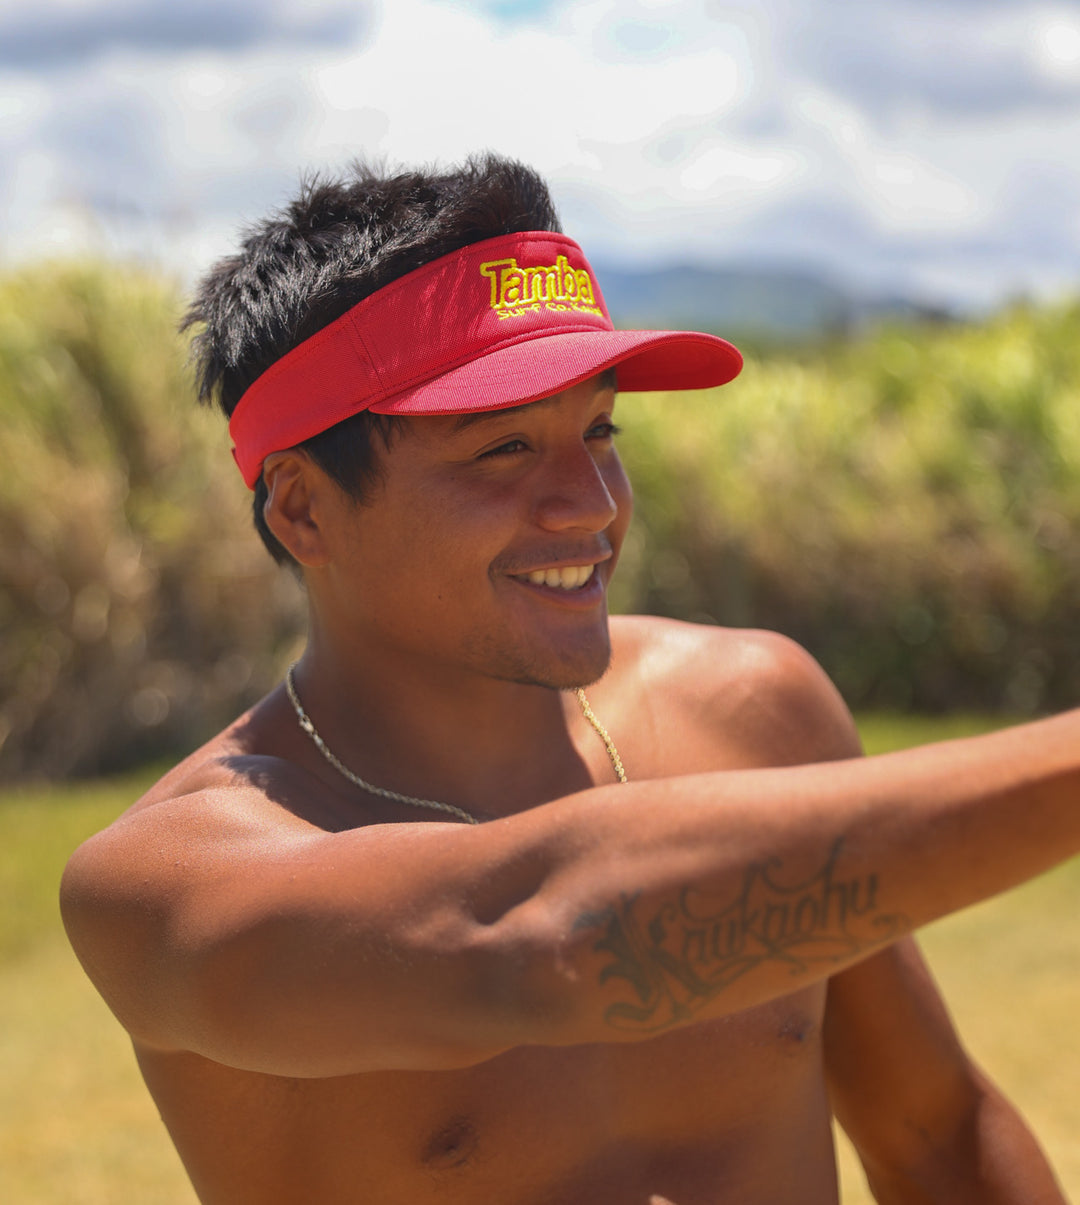 Surf Co Kauaʻi Visor - Red/Yellow